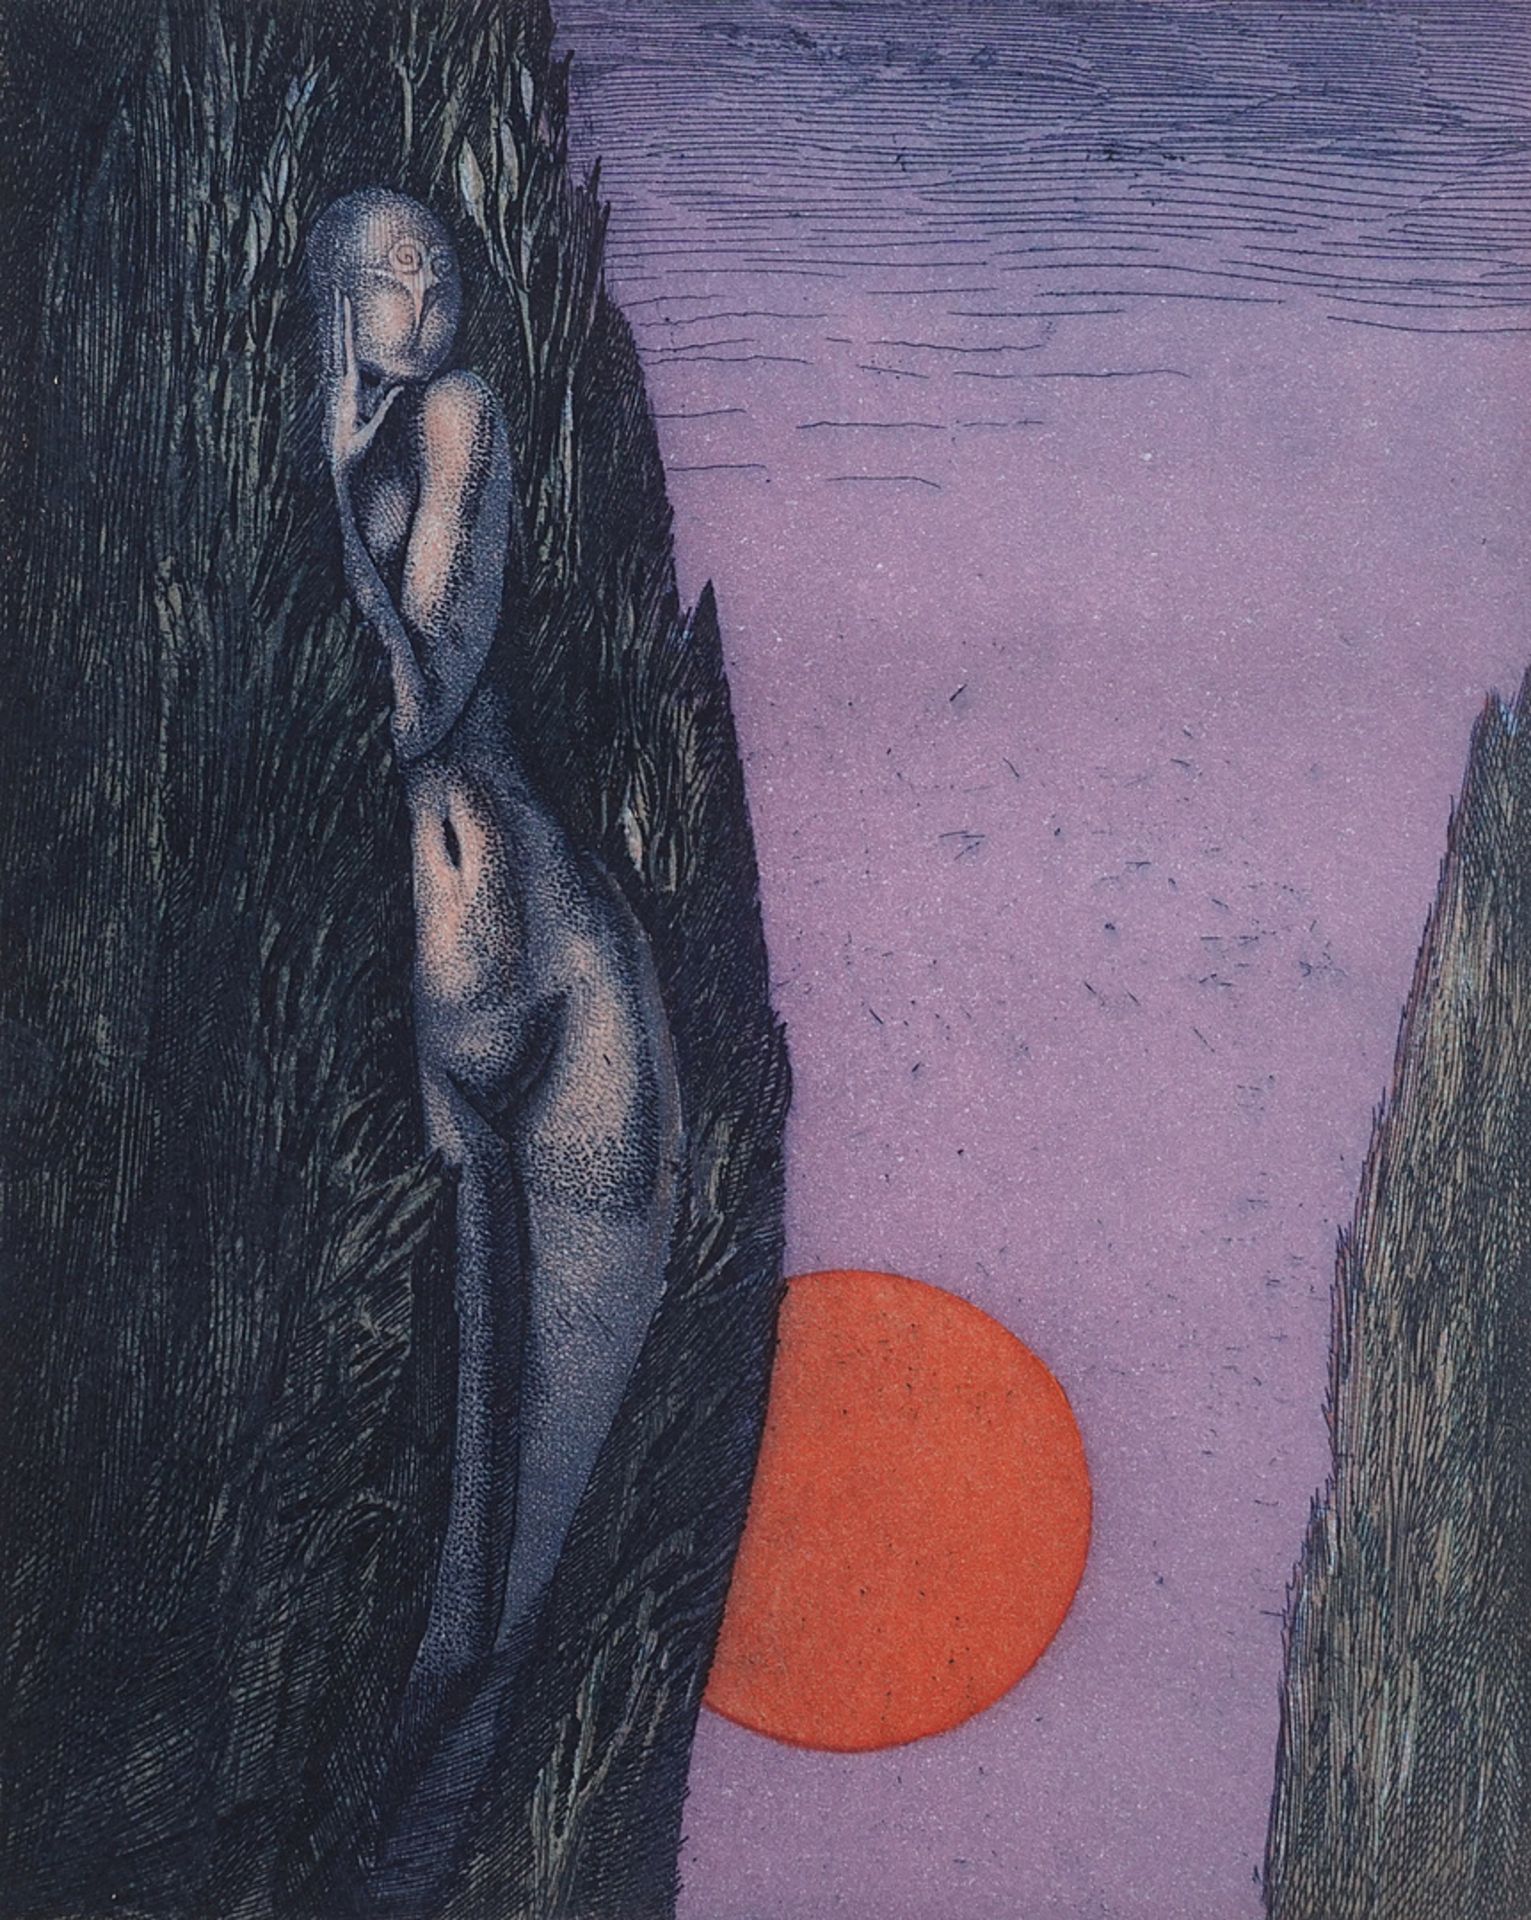 Ernst Fuchs (1930-2015), "Hain der Daphne" (The grove of Daphne)